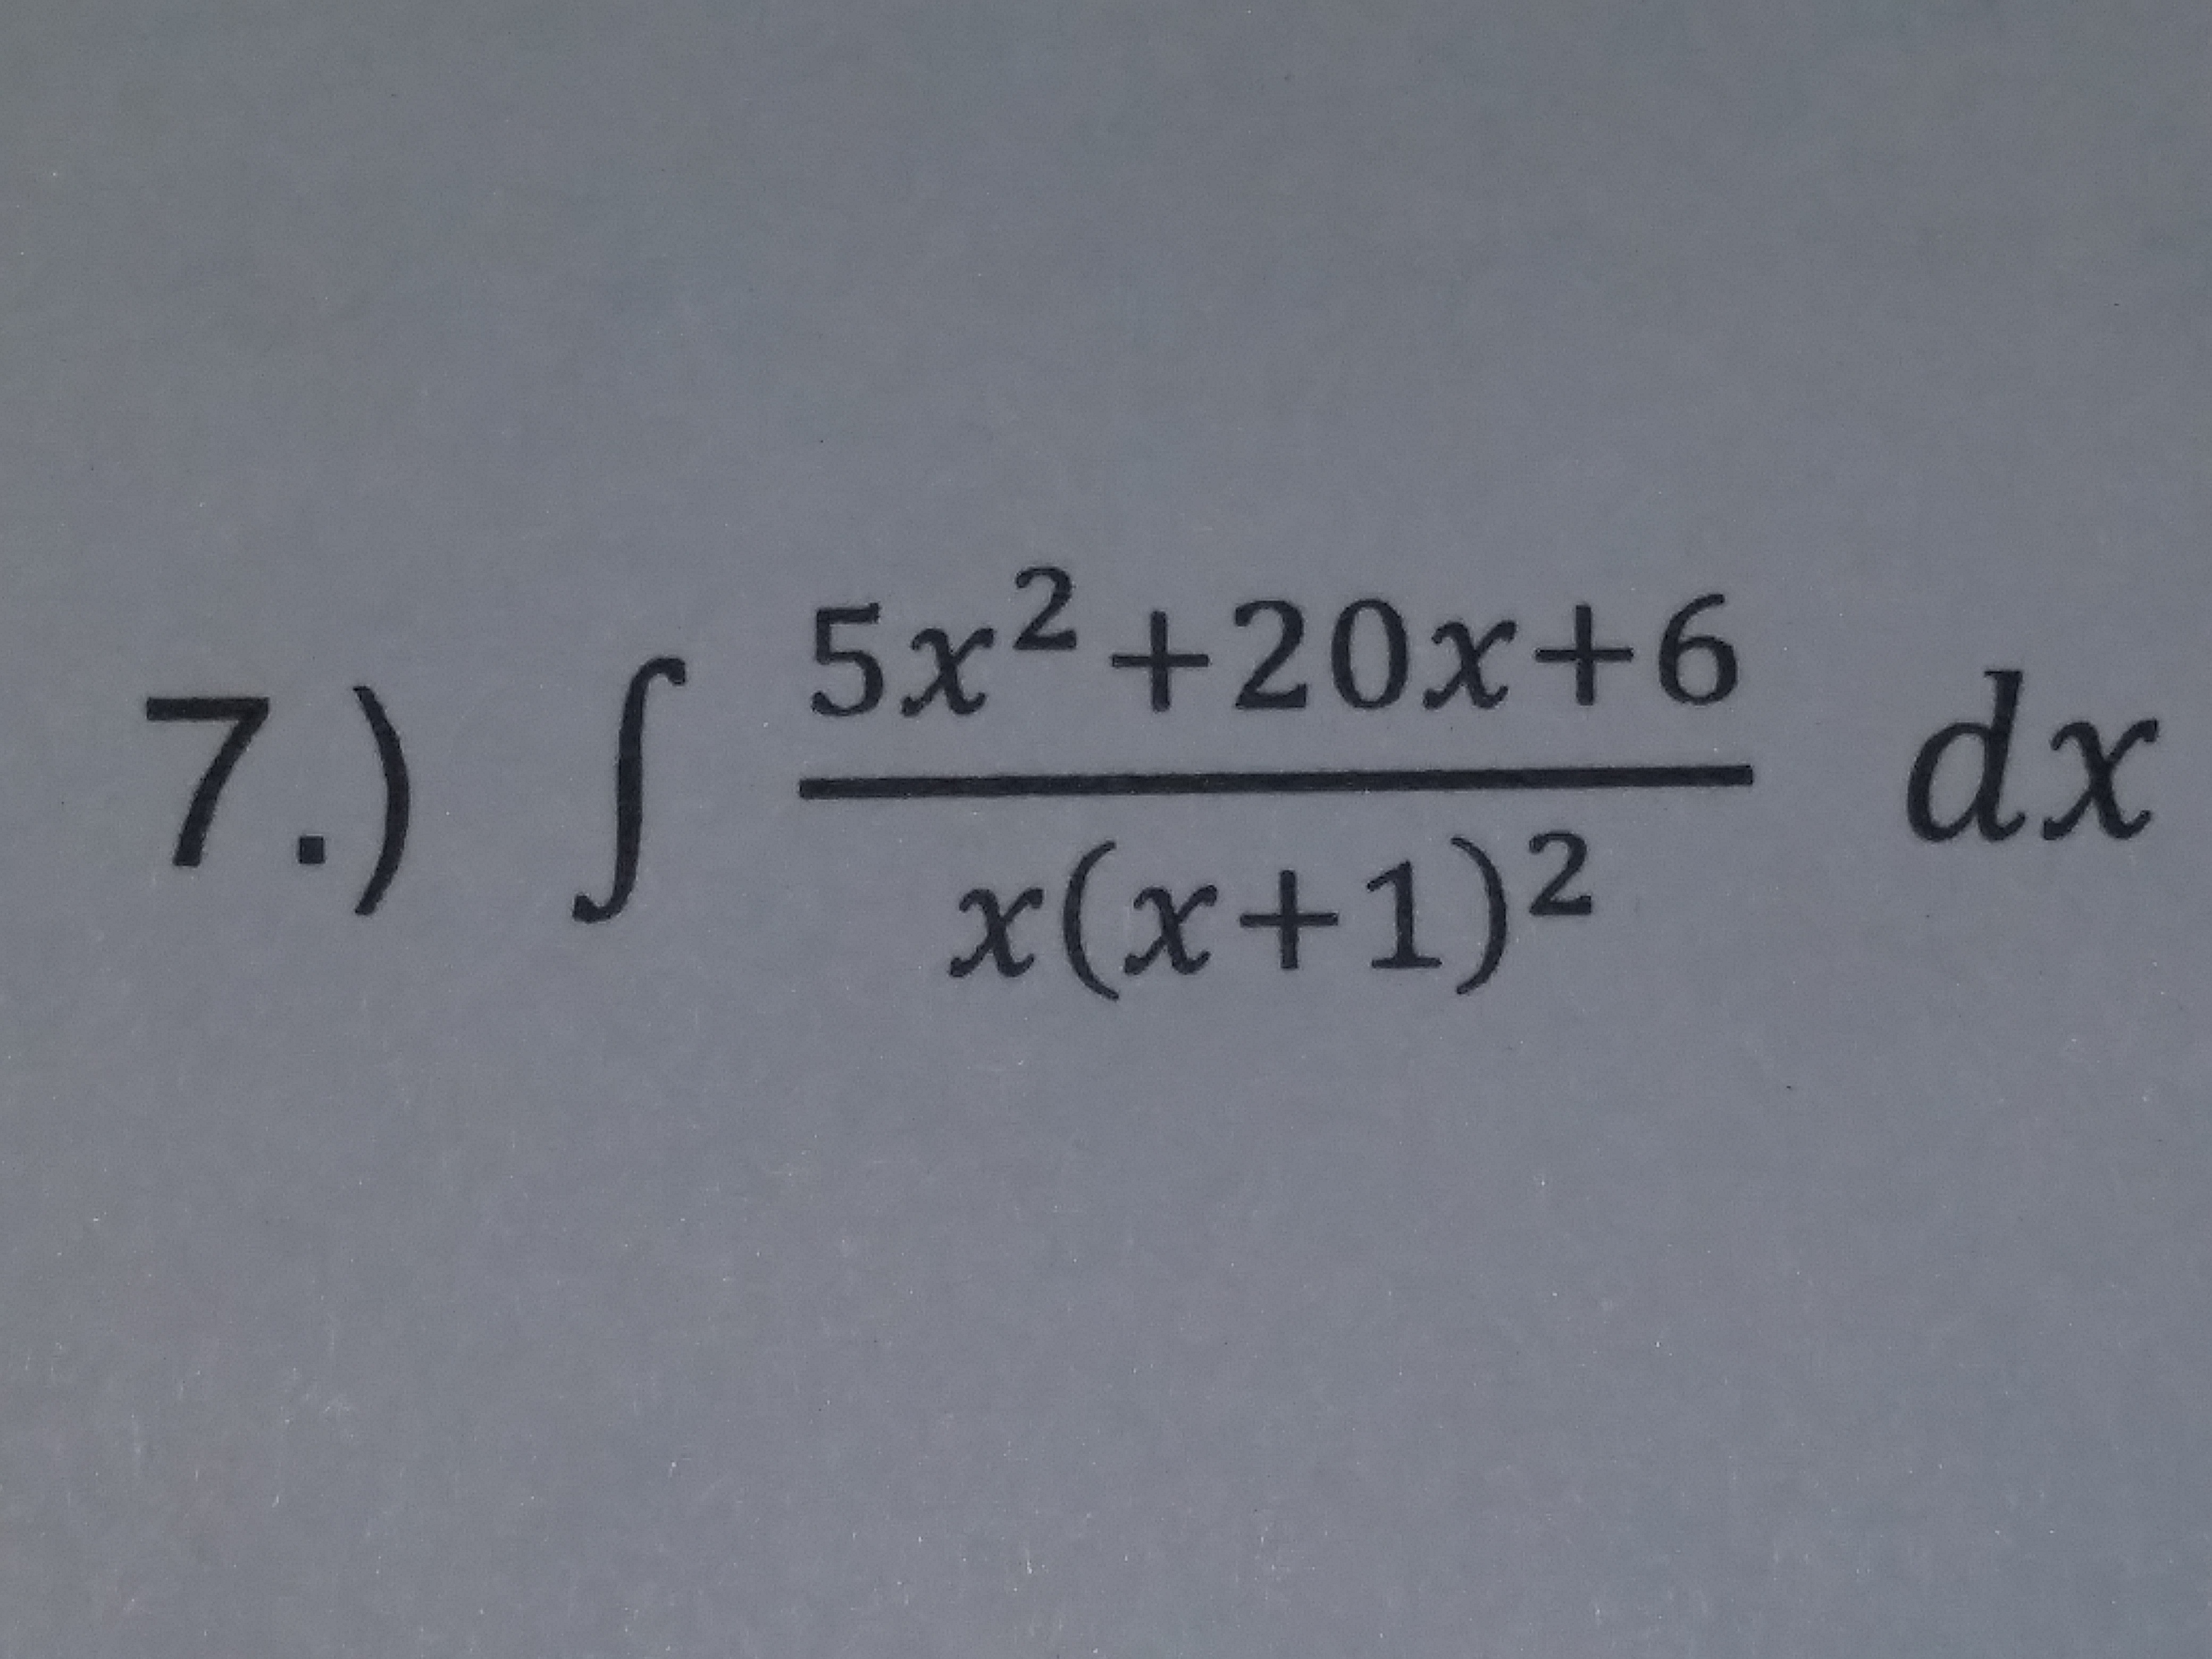 5x2 +20x+6
7
dx
χ(x+1)2
